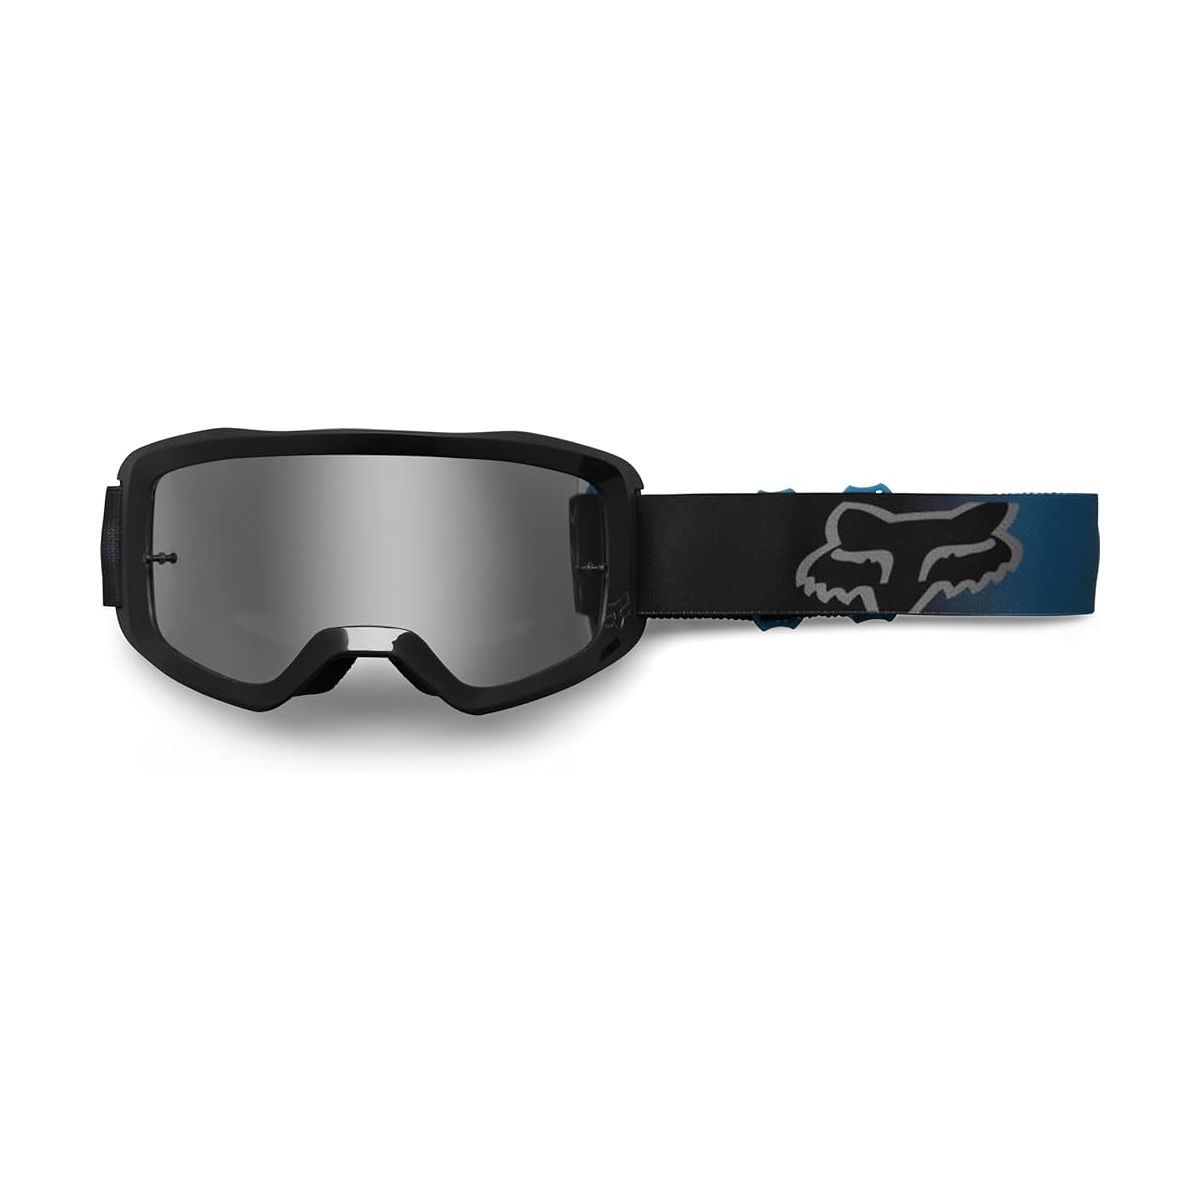 Gafas máscara Fox Main Ryaktr - Lente espejo 29679-551 azul y negras